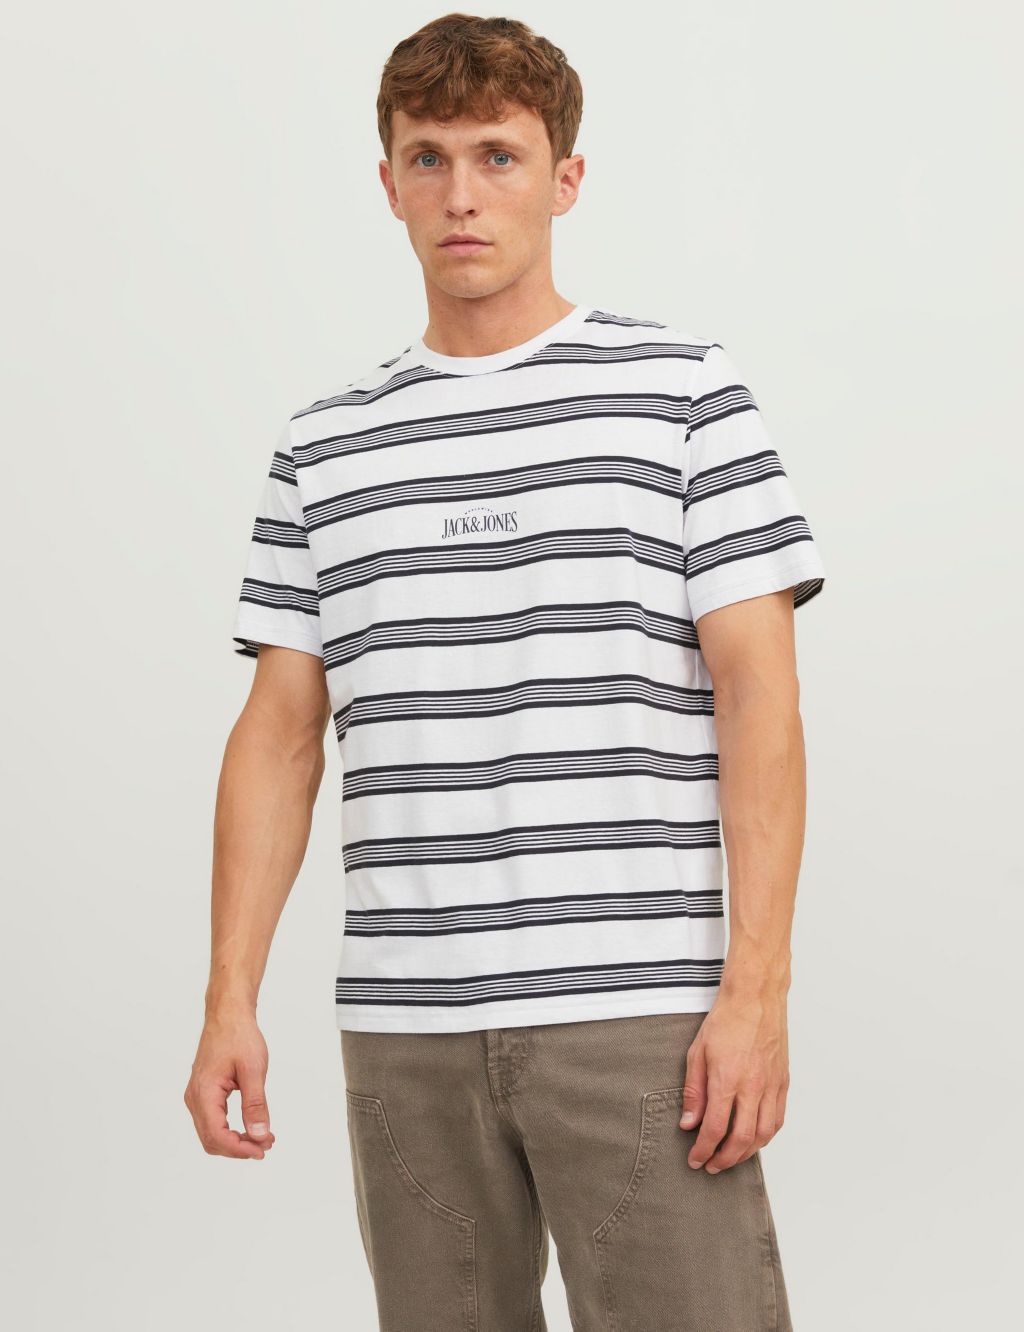 Shop Men’s Striped T-Shirts | M&S